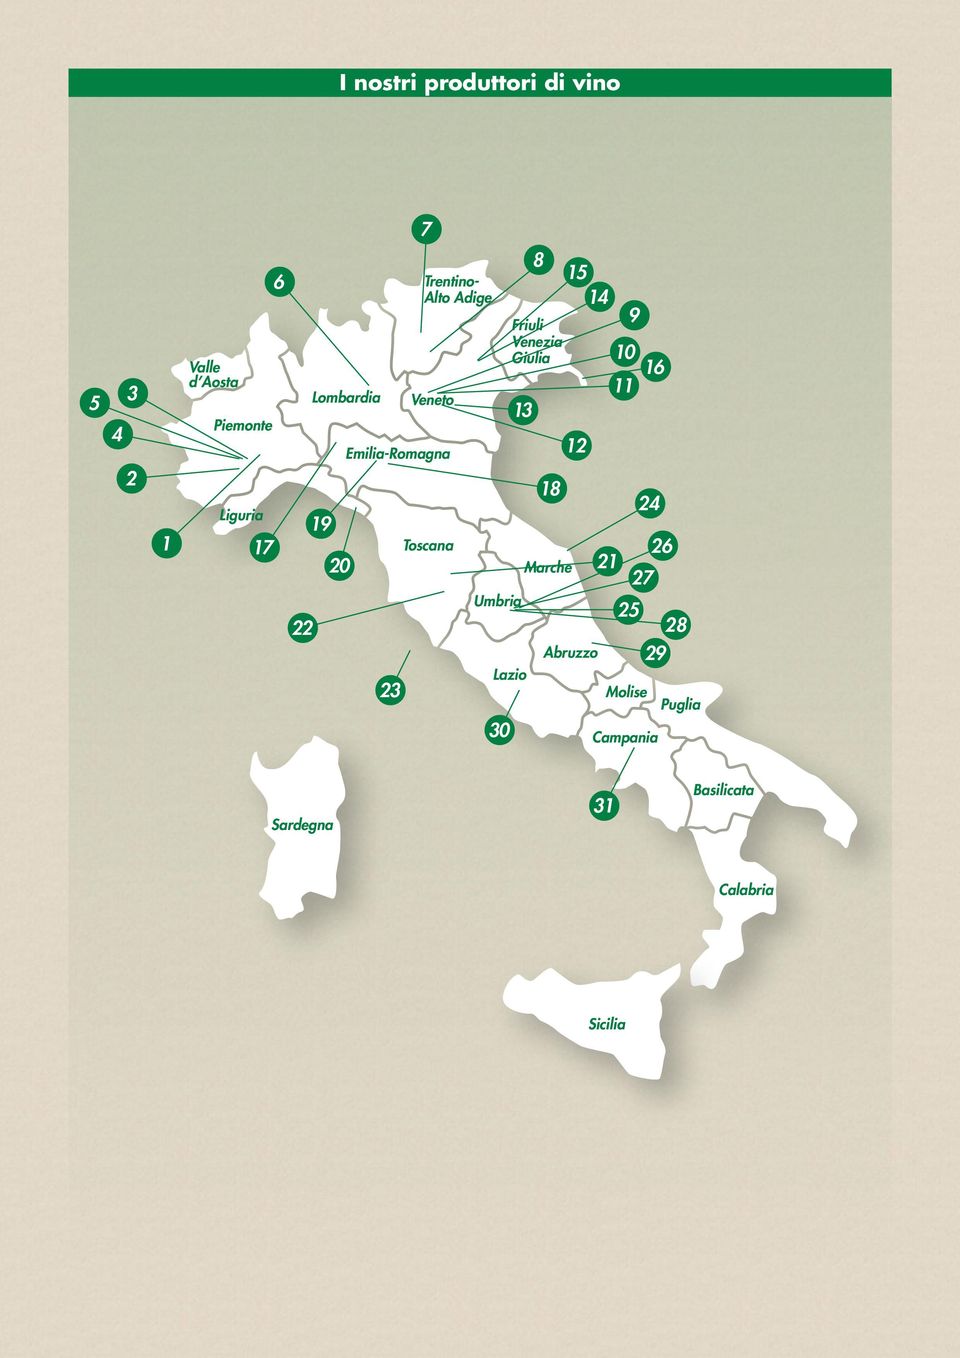 Calabria I nostri produttori di vino 1 2 3 4 7 8 11 9 12 13 14 15 16 17 18 20